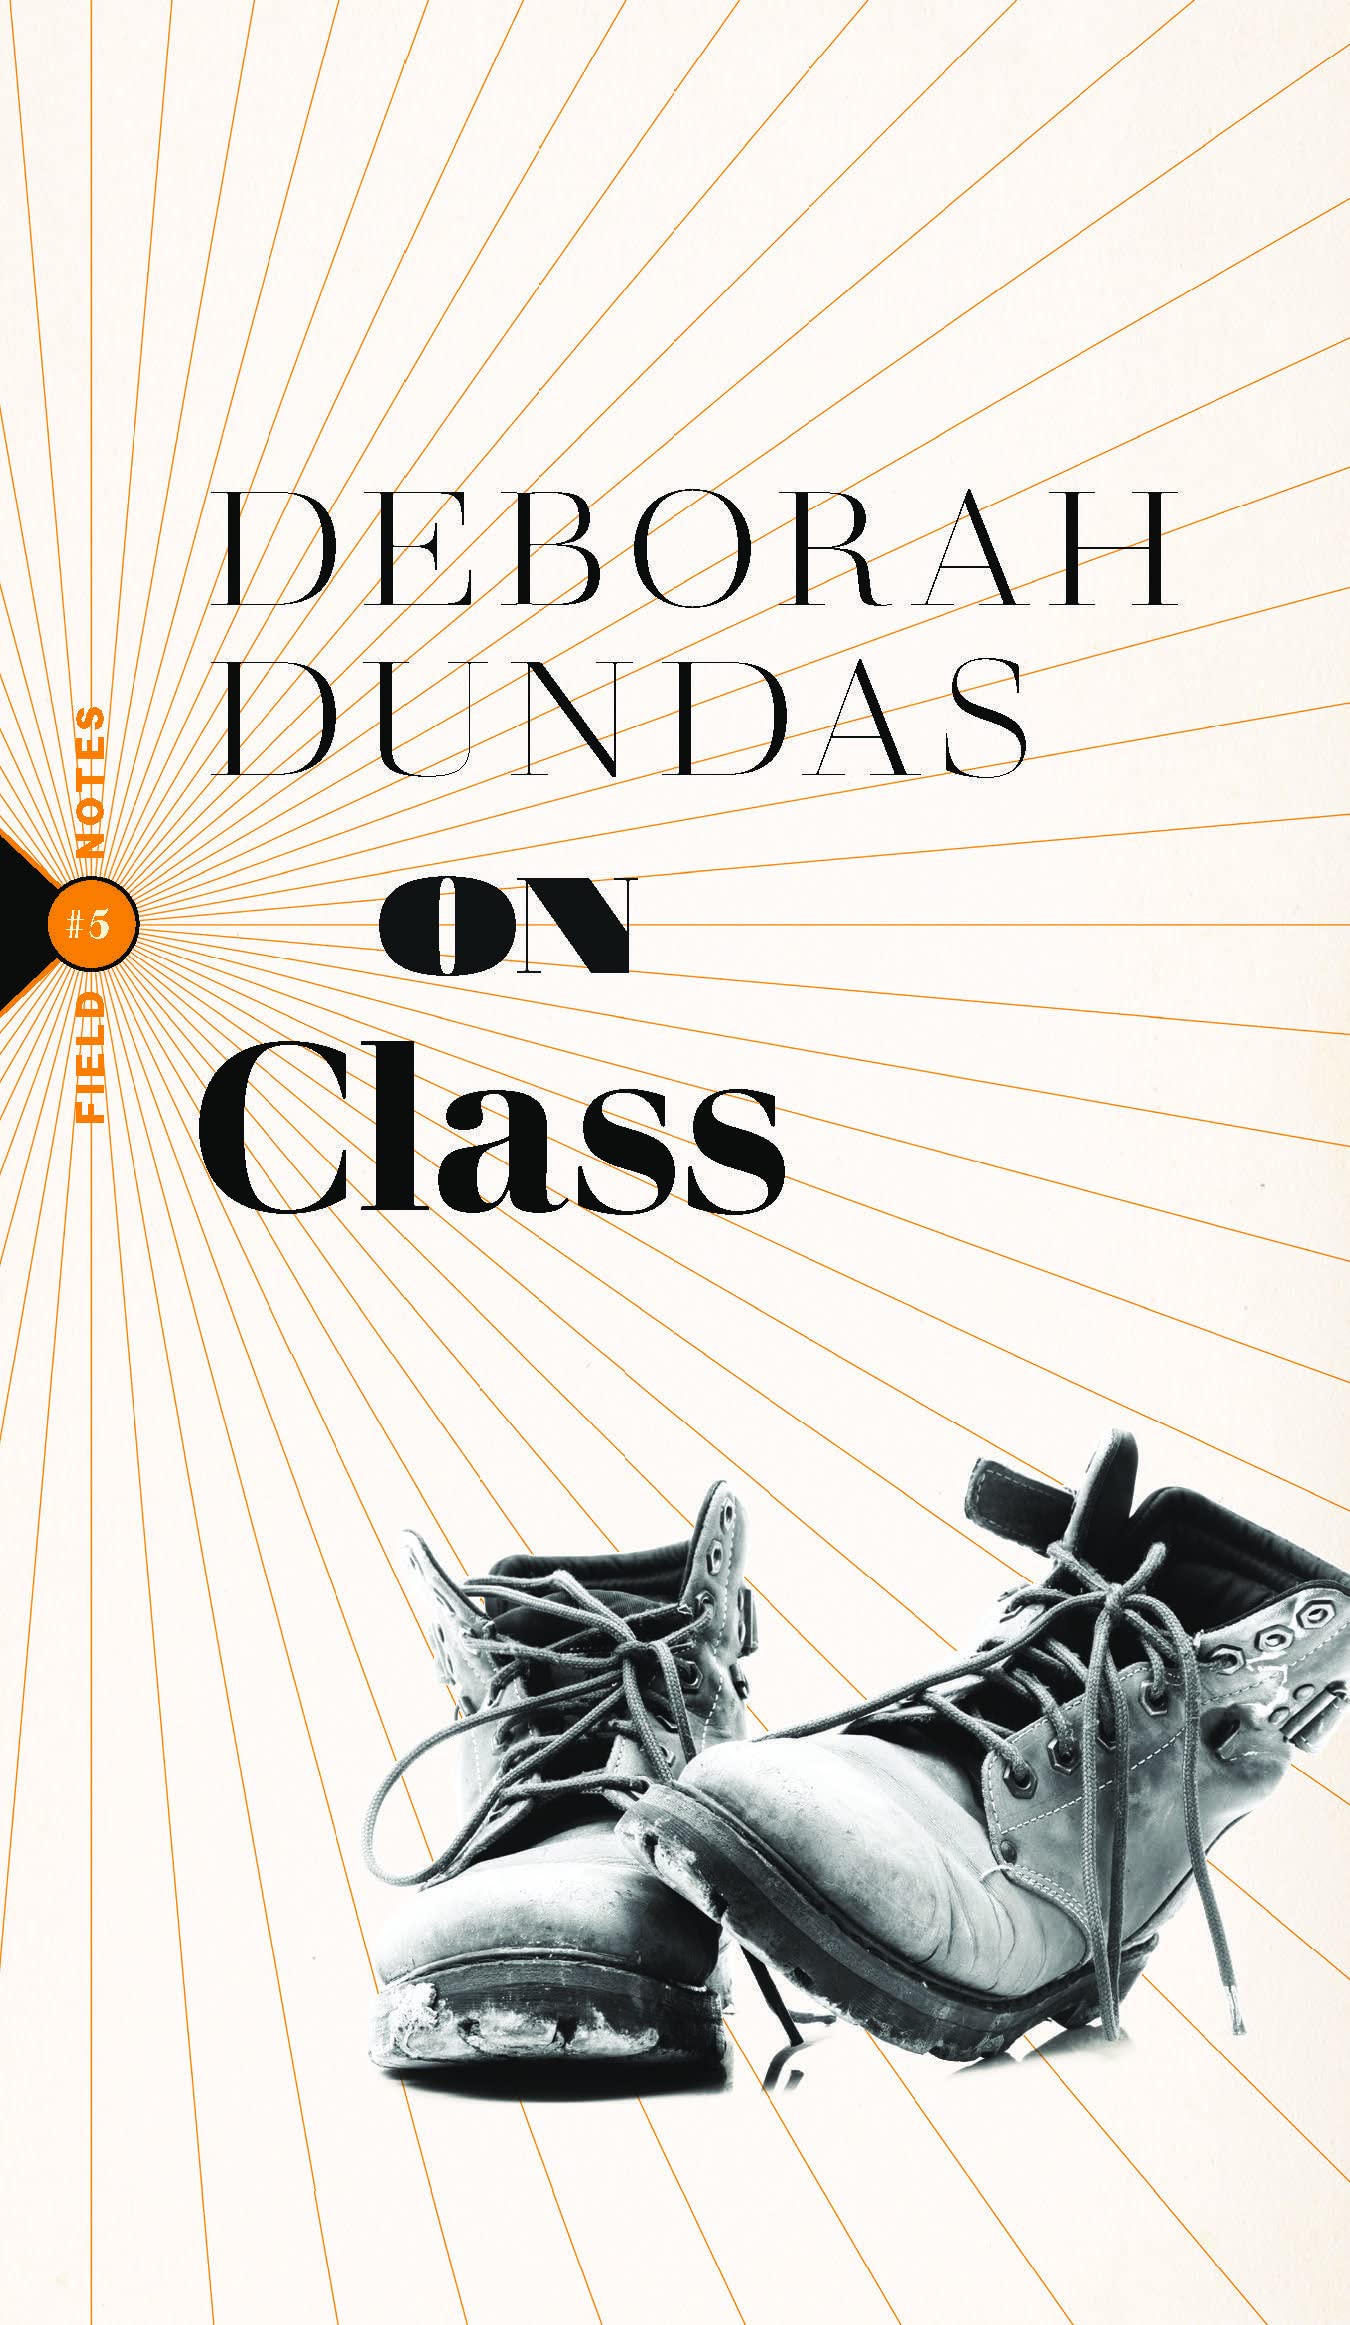 Deborah Dundas' On Class book cover